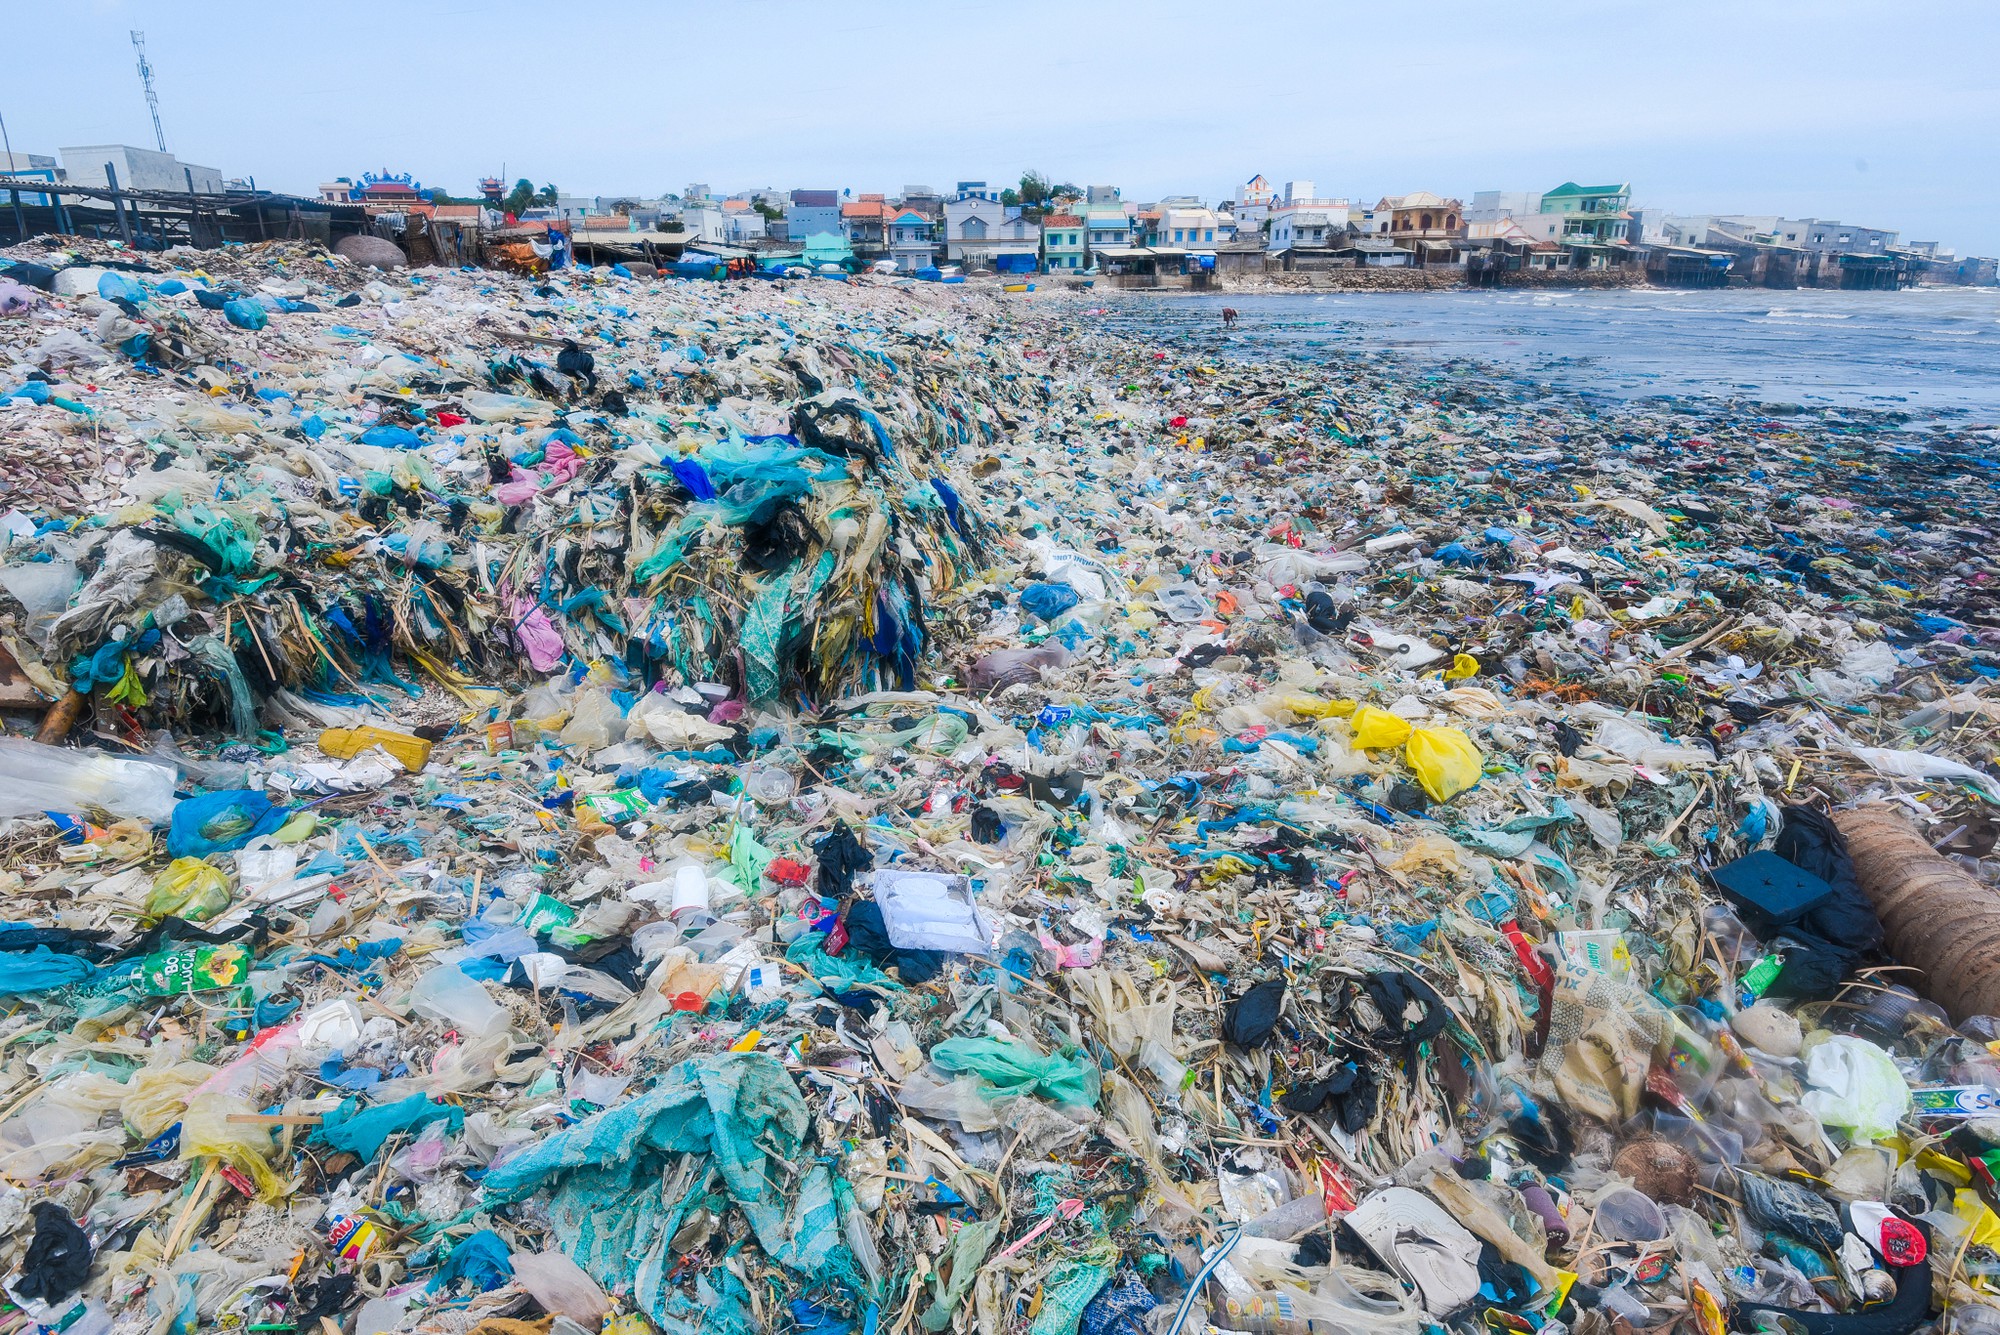 Cùng xem ảnh về rác thải nhựa tại bờ biển Việt Nam để nhận ra vấn đề lớn cần được giải quyết. Chúng ta cùng nhau đóng góp để bảo vệ môi trường và giữ gìn vẻ đẹp của quê hương.